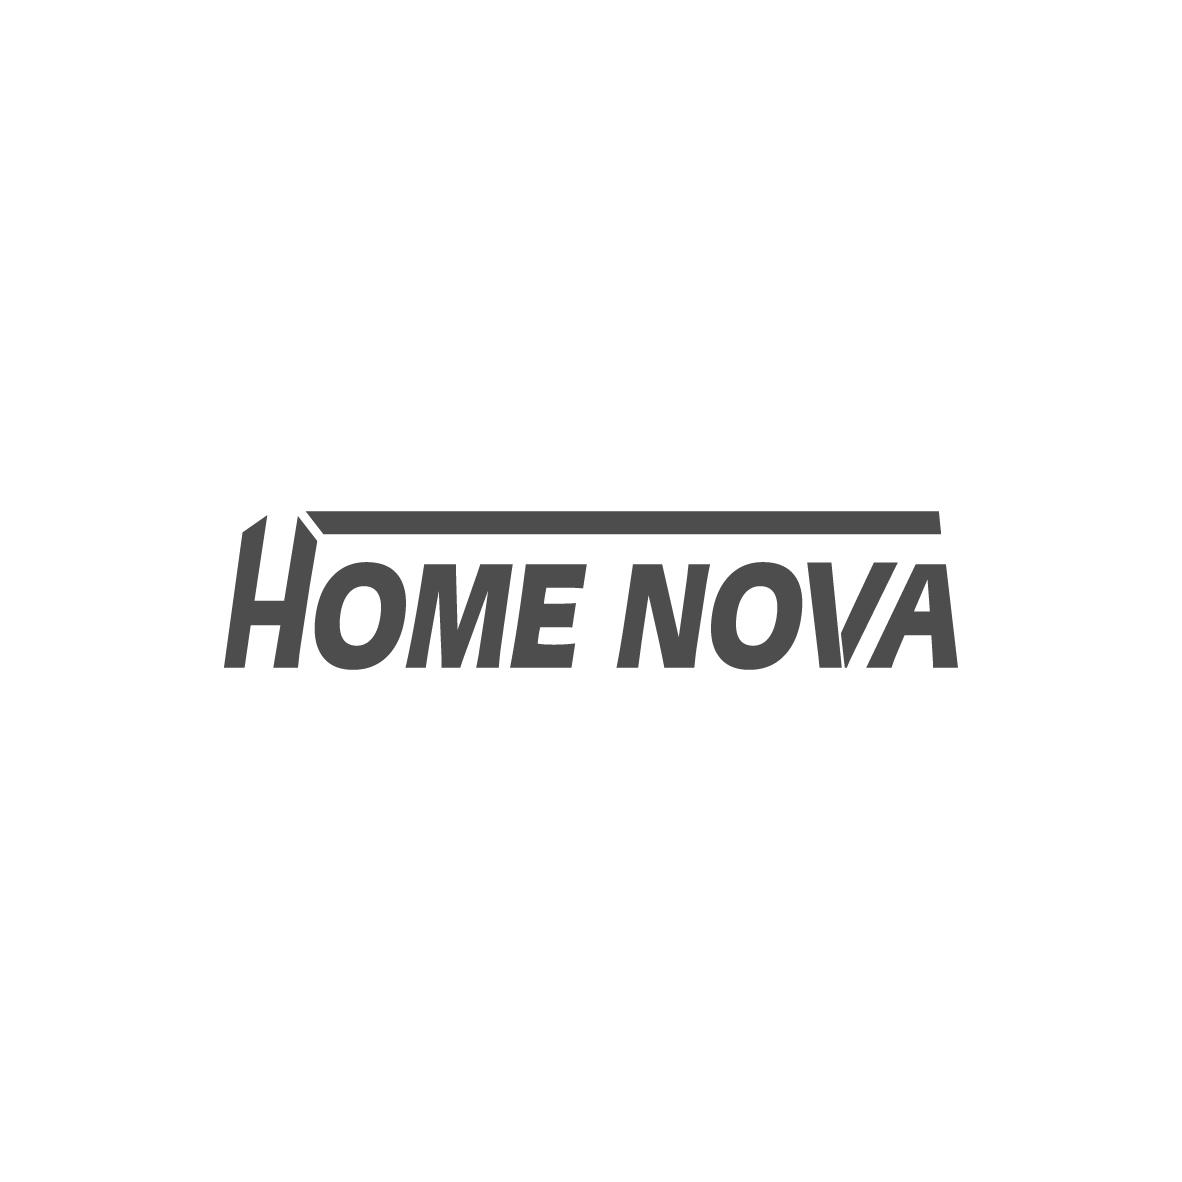 HOME NOVA